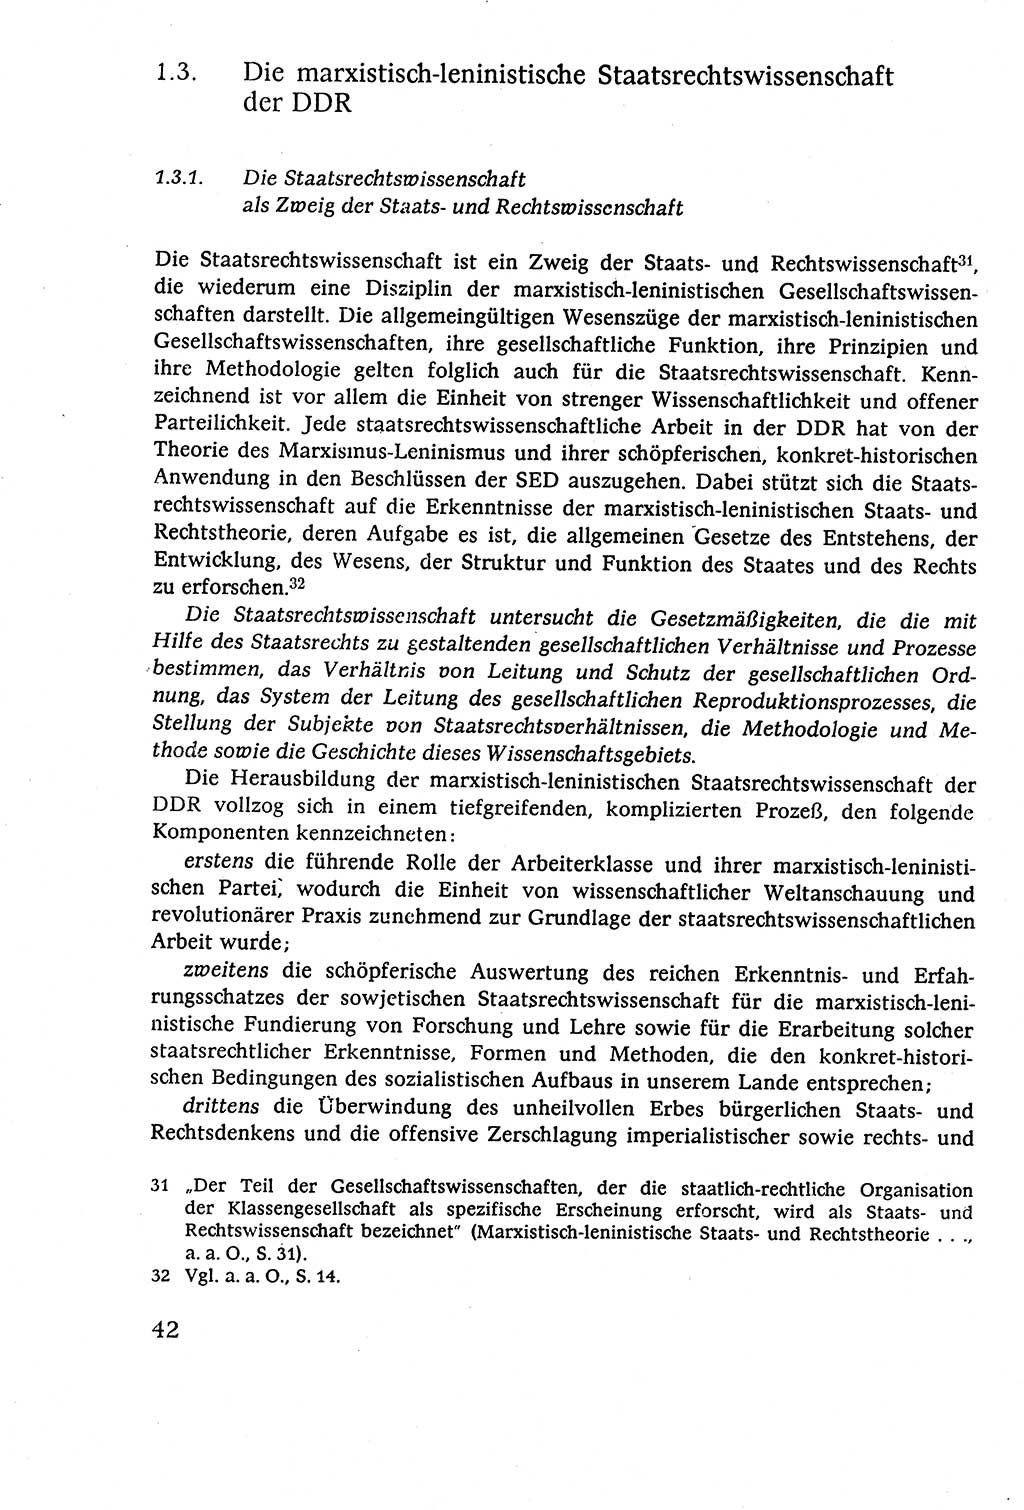 Staatsrecht der DDR (Deutsche Demokratische Republik), Lehrbuch 1977, Seite 42 (St.-R. DDR Lb. 1977, S. 42)